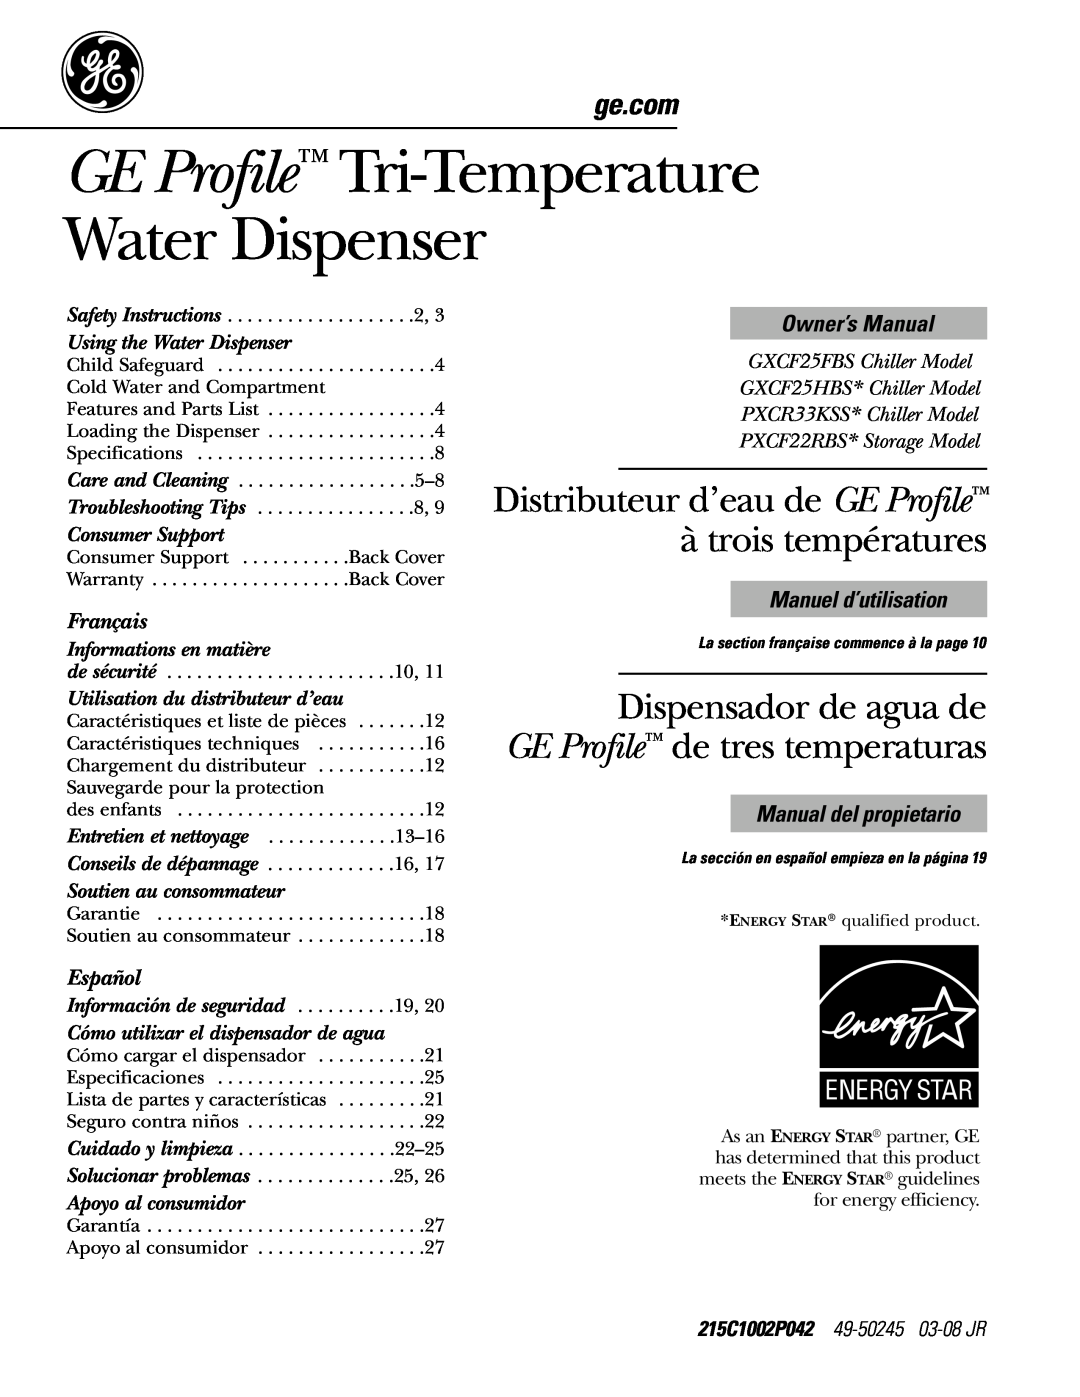 GE PXCF22RBS owner manual 215C1002P042 49-50245 03-08 JR, GE Profile Tri-Temperature Water Dispenser, à trois températures 